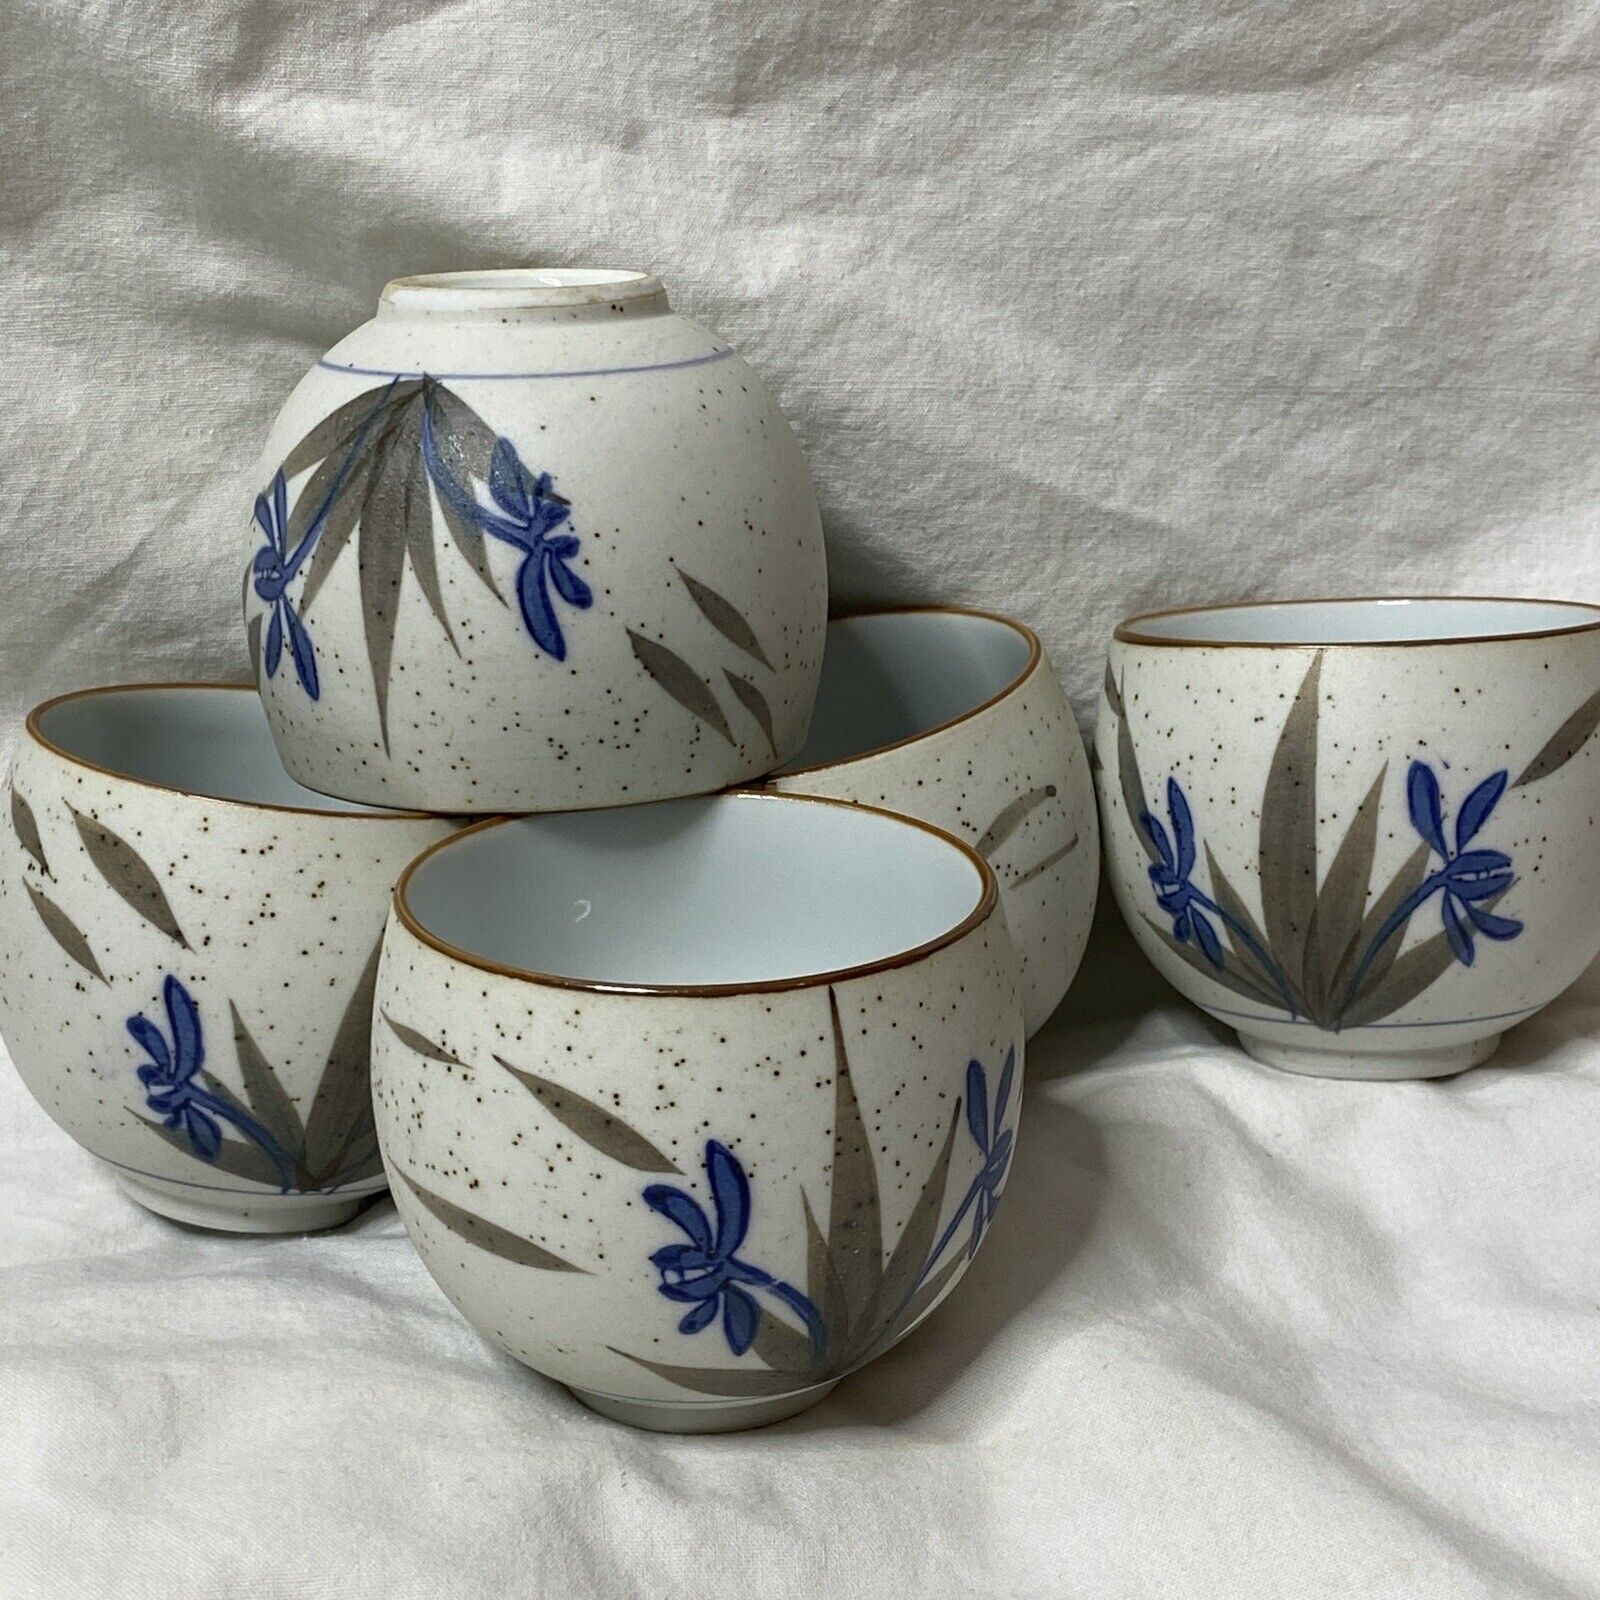 Tea Cups Arita Nishimine Uda Japan Porcelain 5 Blue Floral Green Leaves Signed